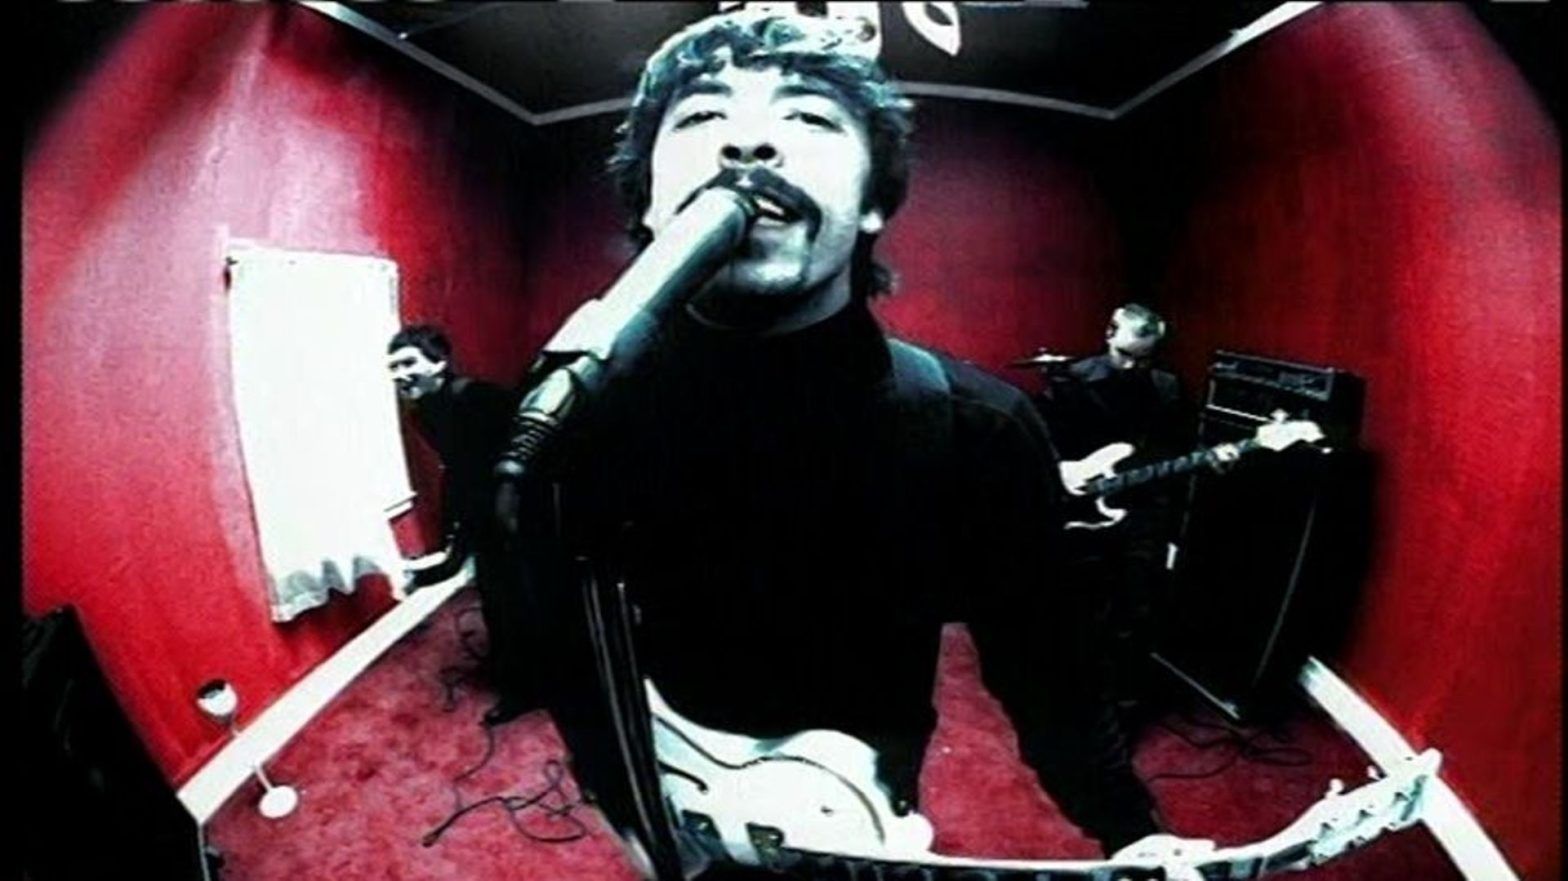 กีตาร์สุดเท่ในมิวสิกวิดีโอเพลง “Monkey Wrench” ของ Foo Fighters กำลังจะถูกนำมาประมูลในเดือนหน้า